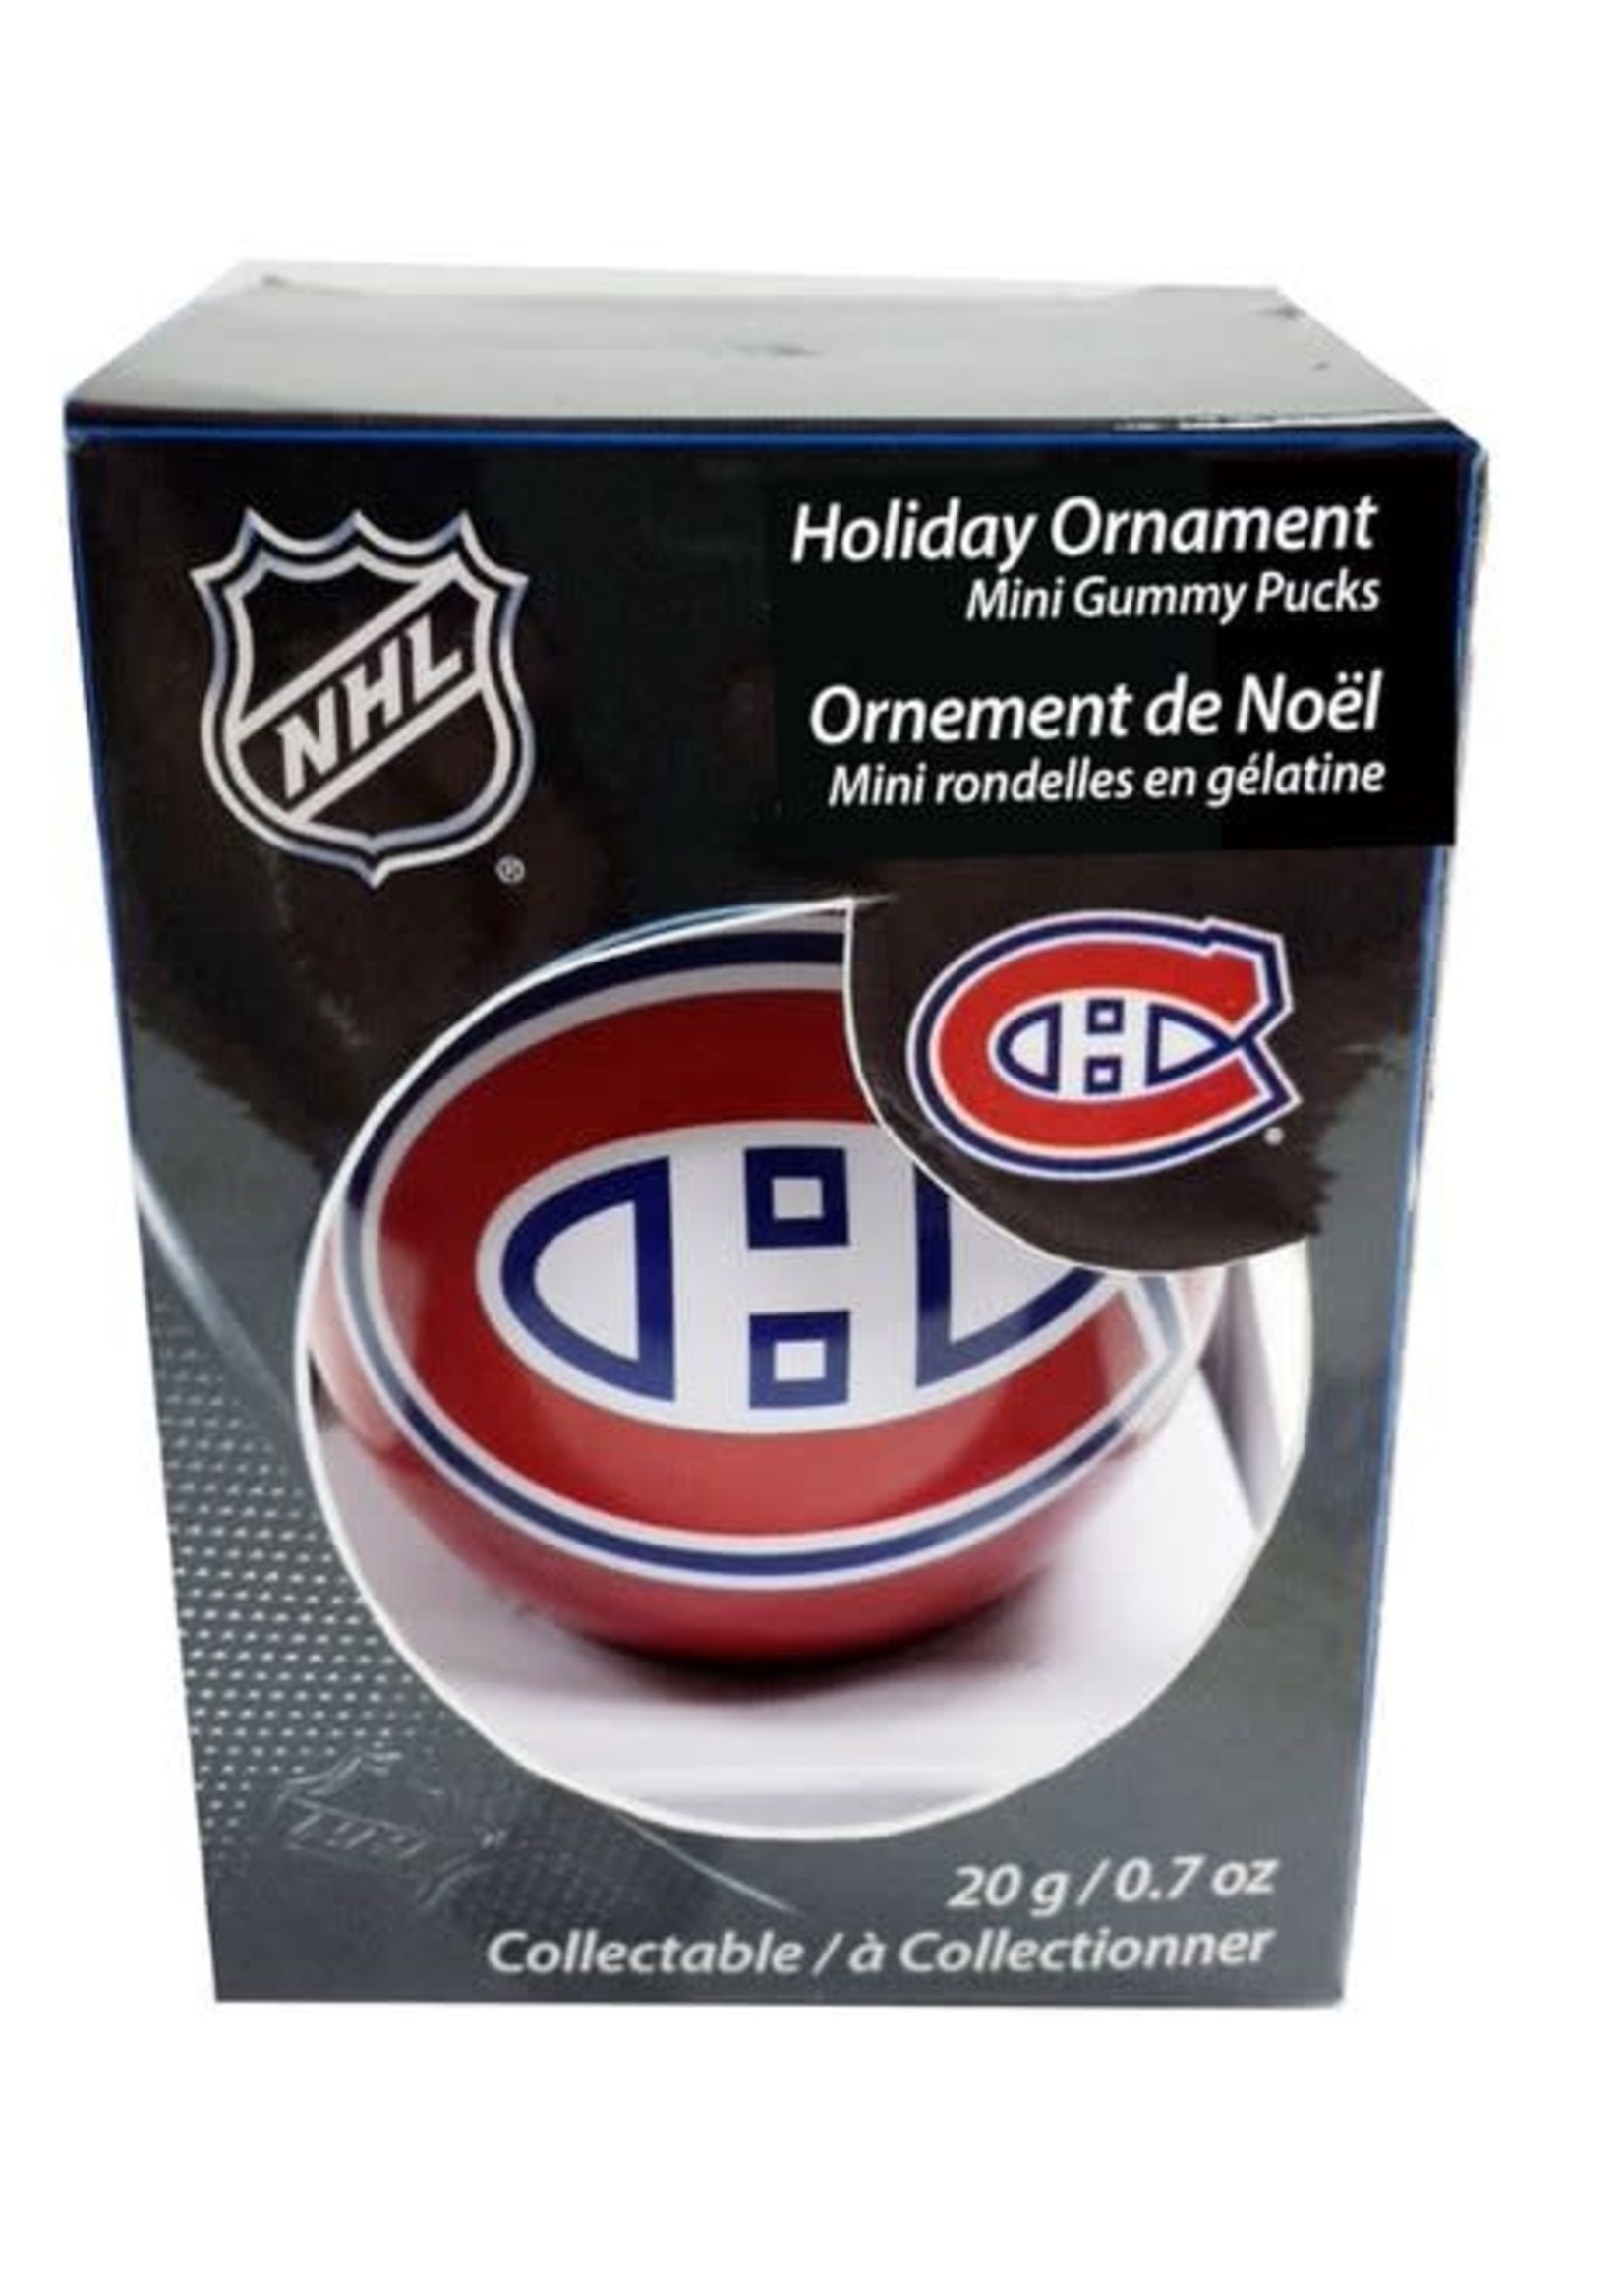 Gladius Ornement de Noel avec mini rondelle  de Bonbons NHL/Canadiens